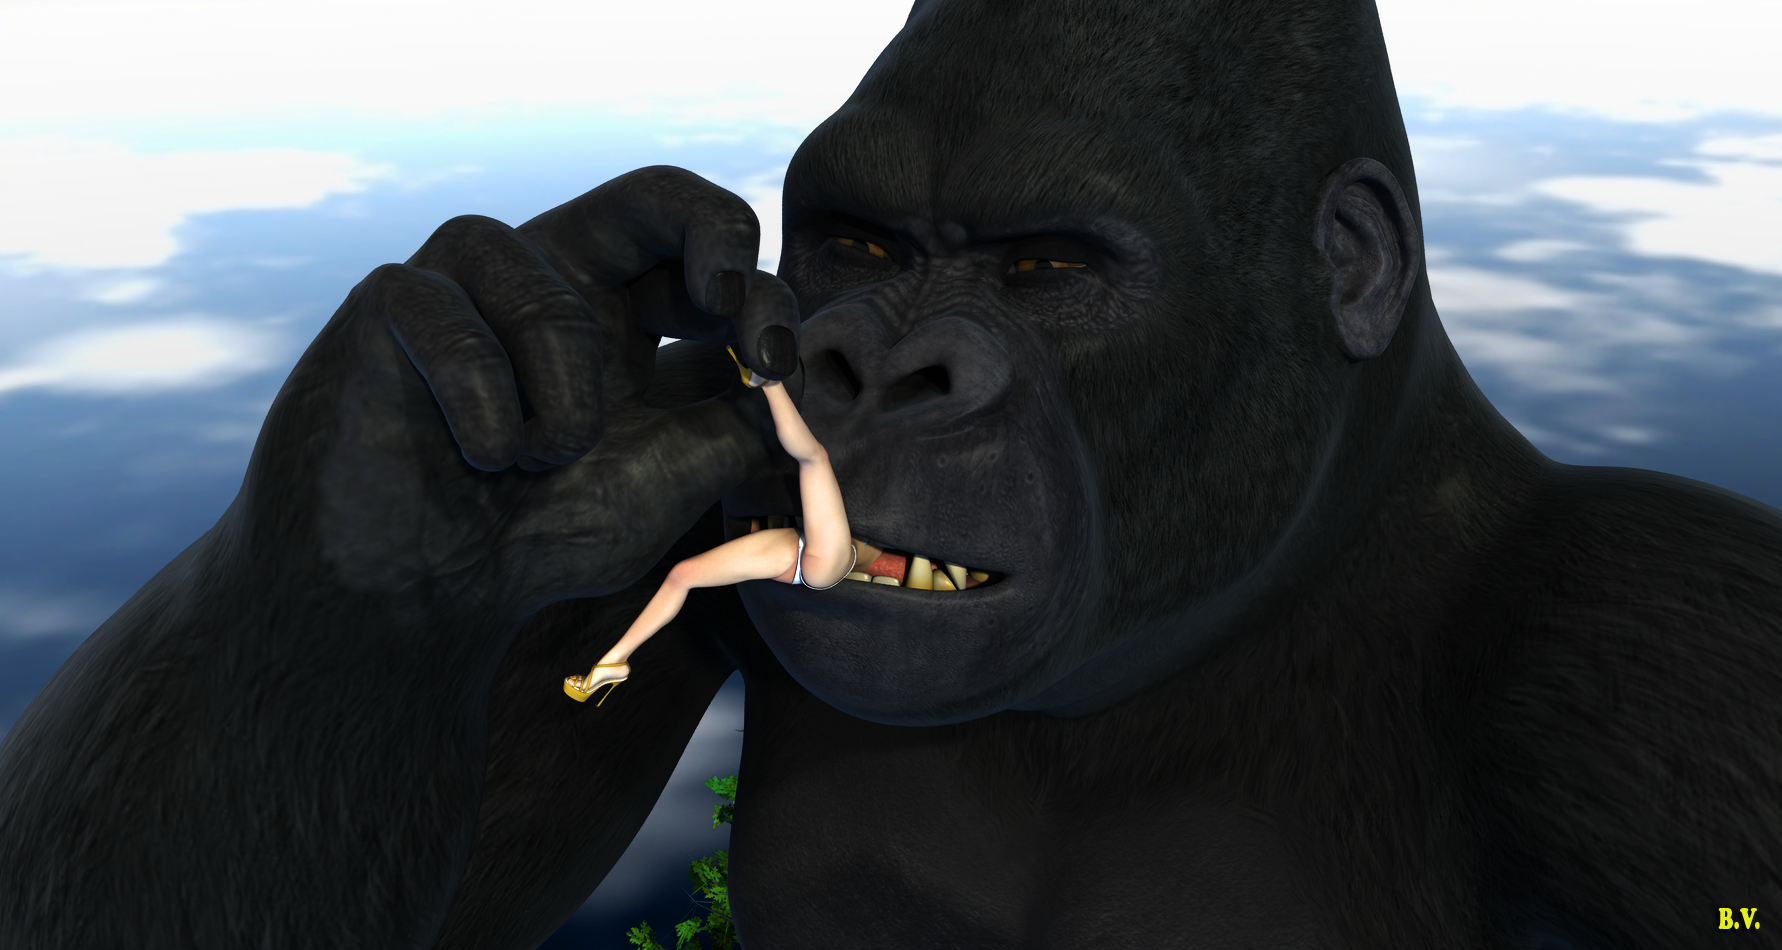 King Kong Vore Returns 15 By Bobvan On DeviantArt.